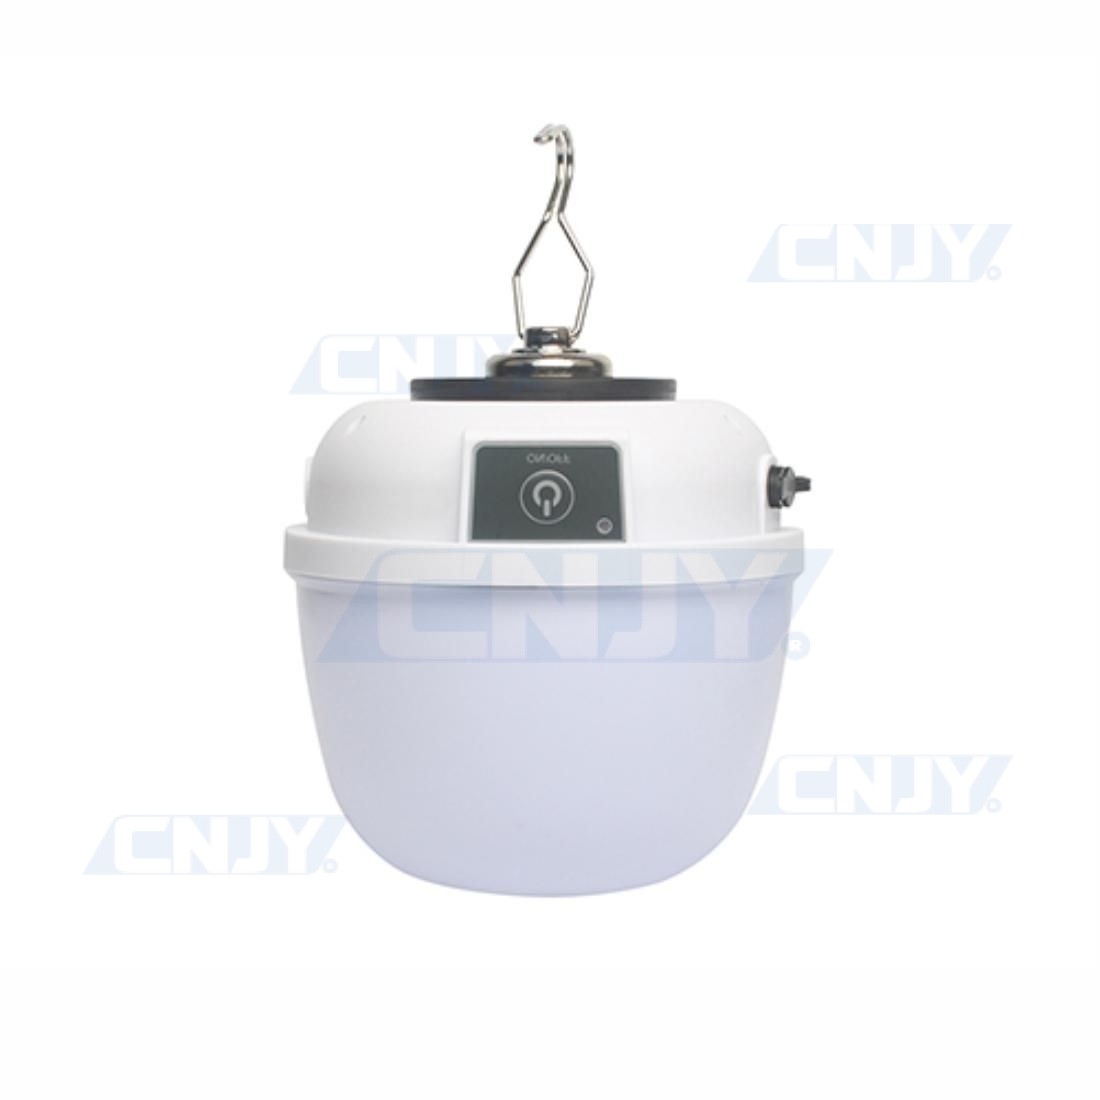 Lampe design SURVI-Led® rechargeable, autonome, magnétique pour un  éclairage et un mode survie SOS.